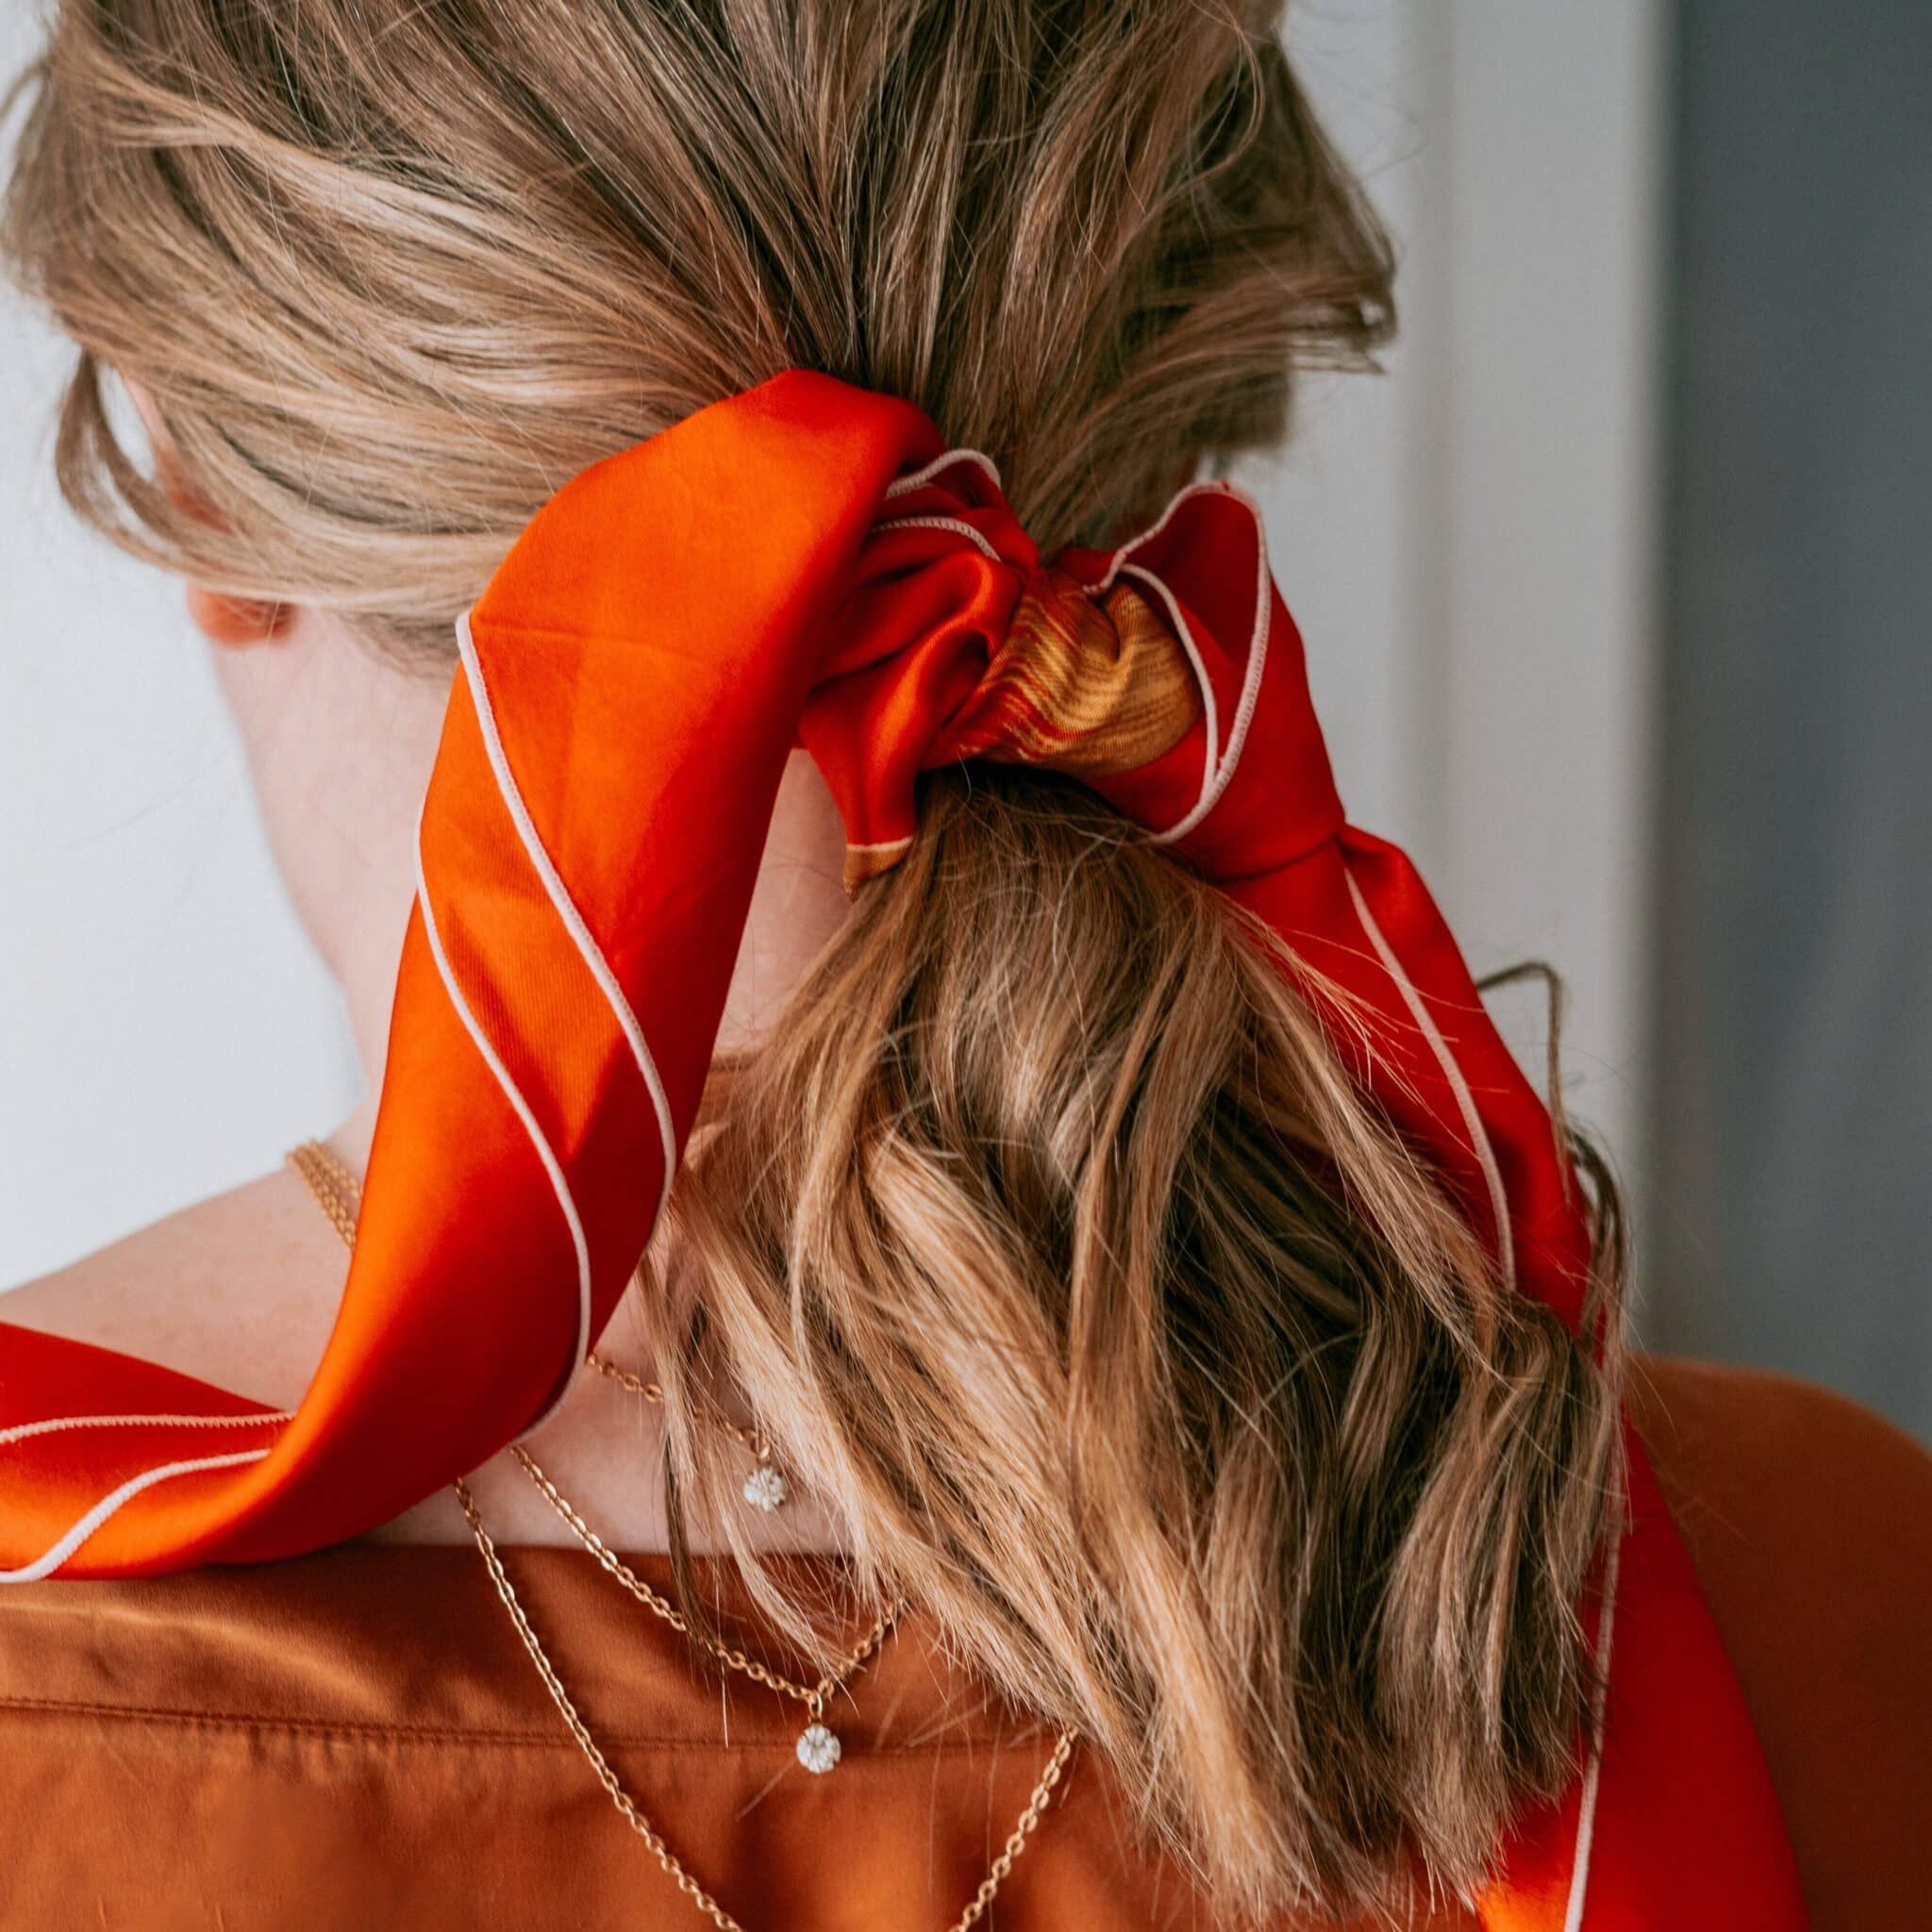 femme blonde de dos qui porte un foulard orange dans les cheveux